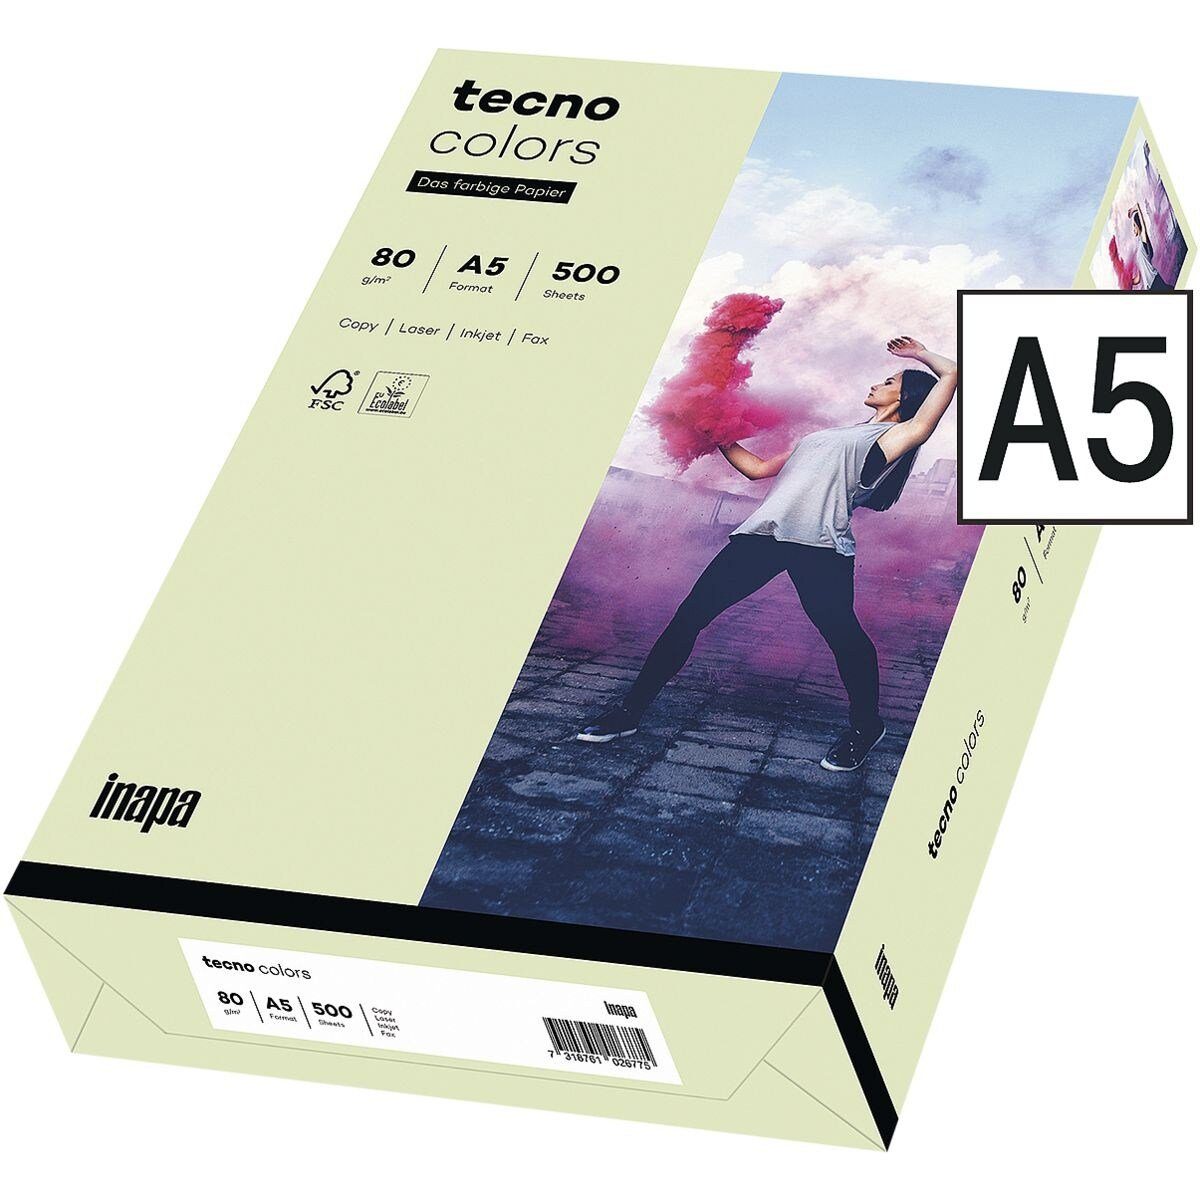 Inapa tecno Drucker- und Kopierpapier Rainbow, Pastellfarben, Format DIN A5, 80 g/m² hellgrün